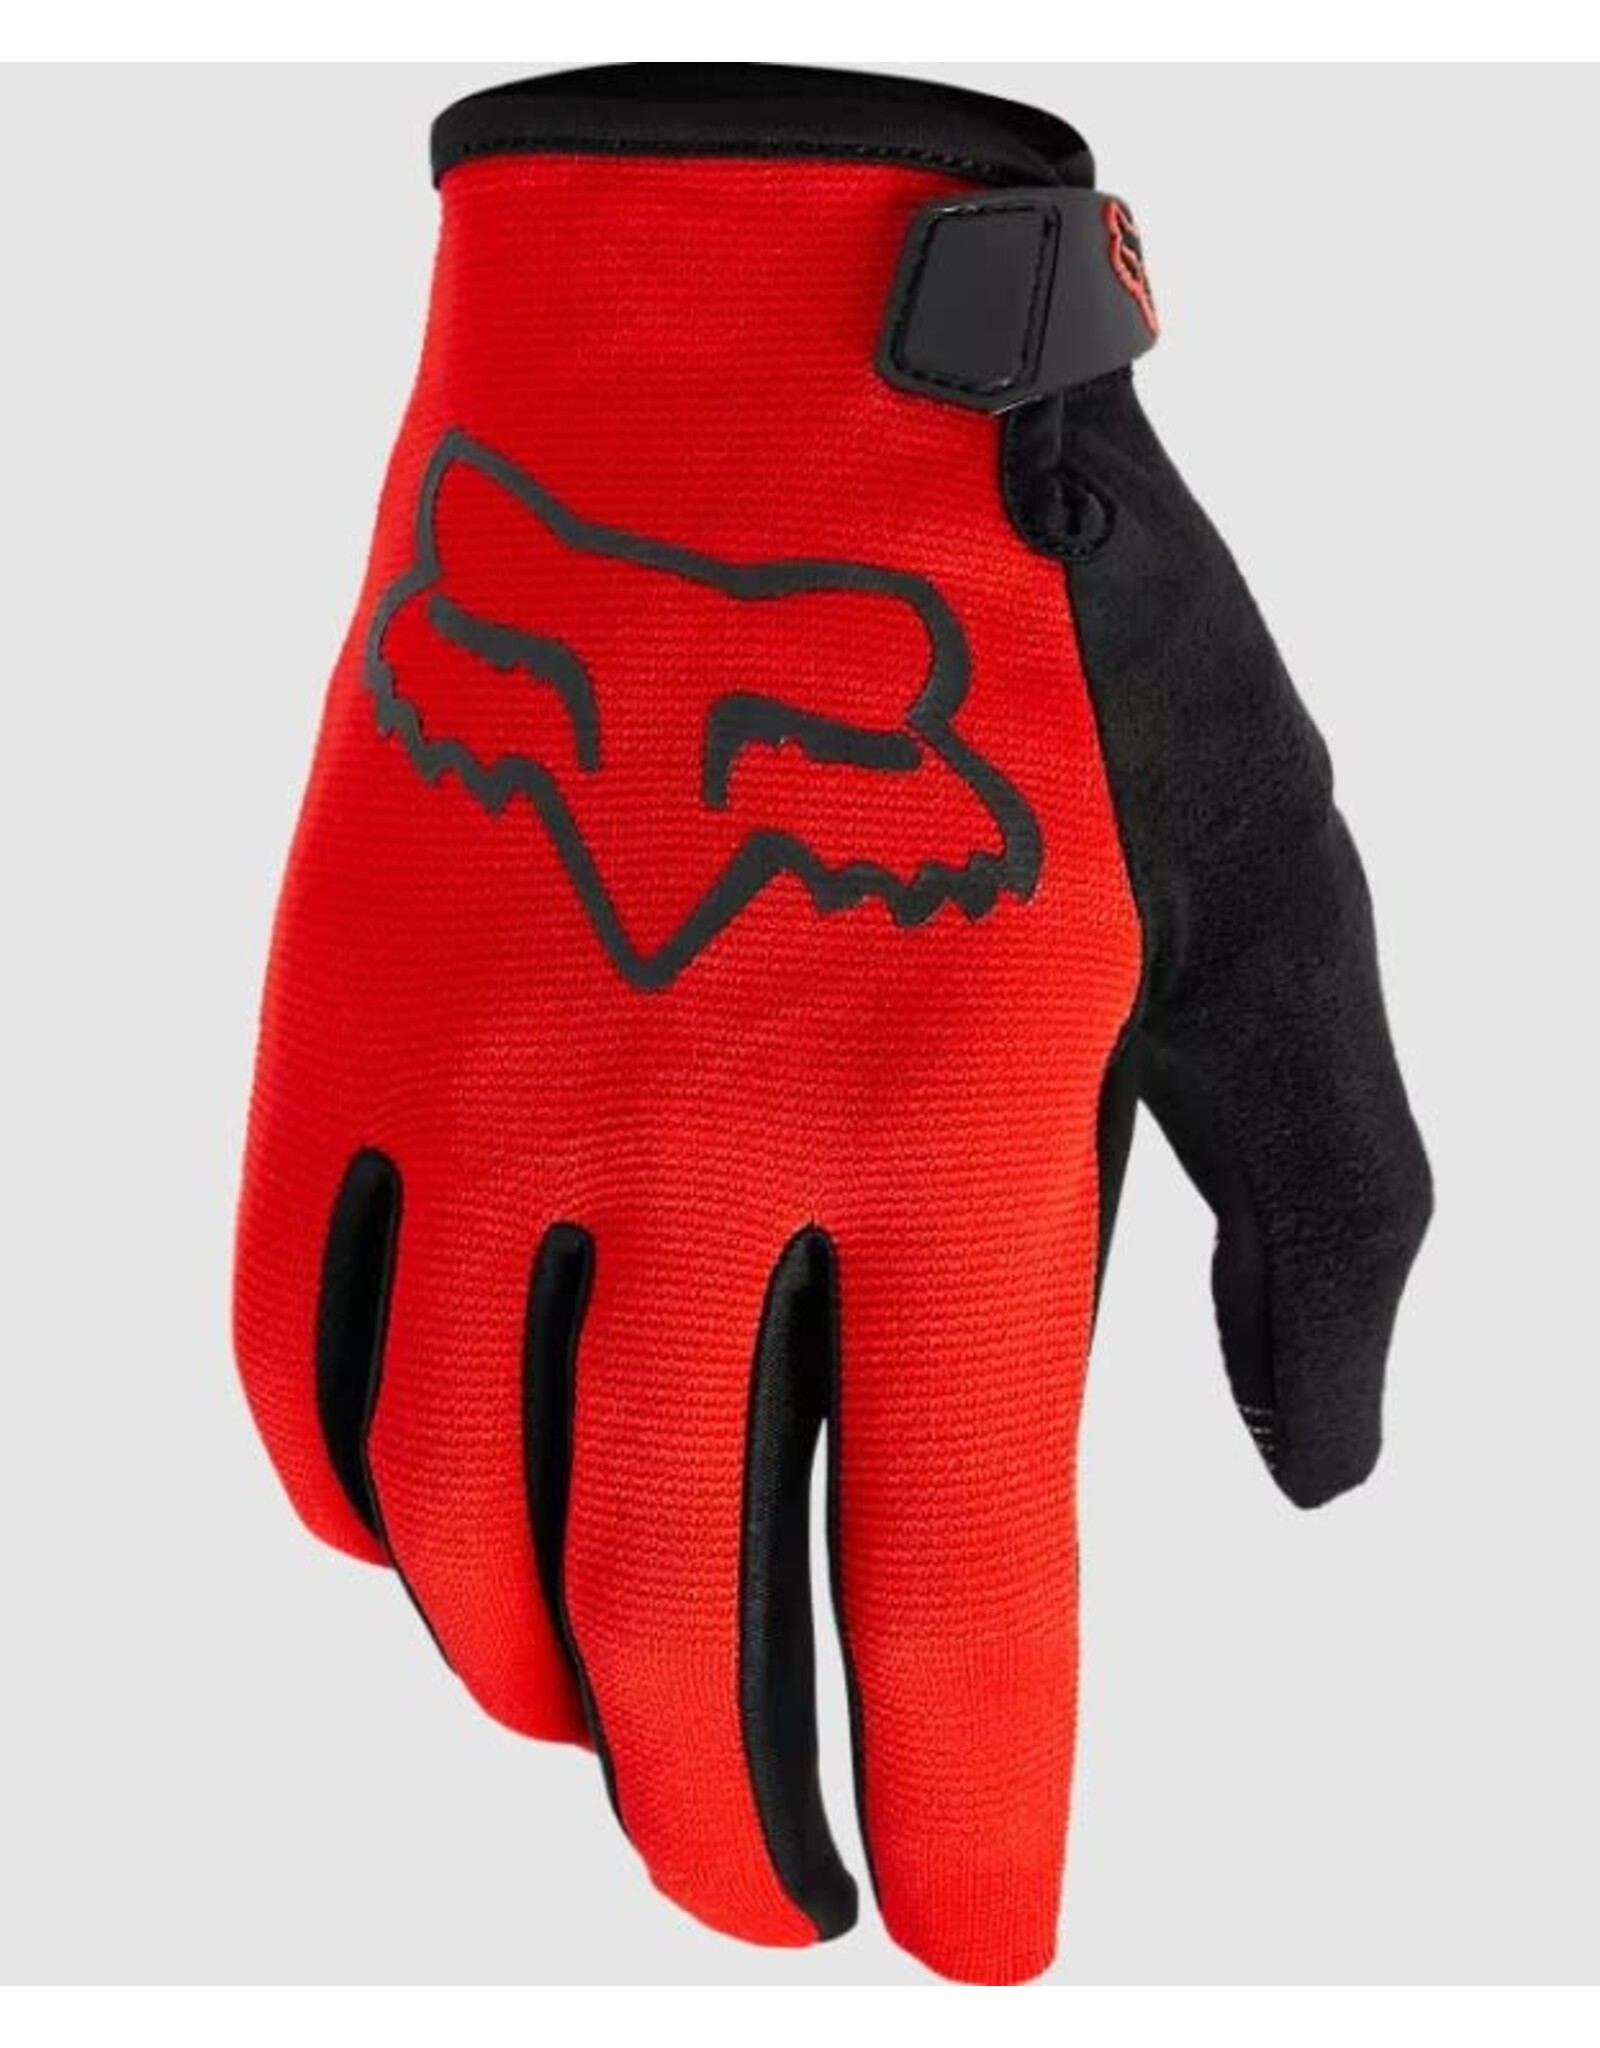 Fox Racing Gloves Fox Ranger mens (new)